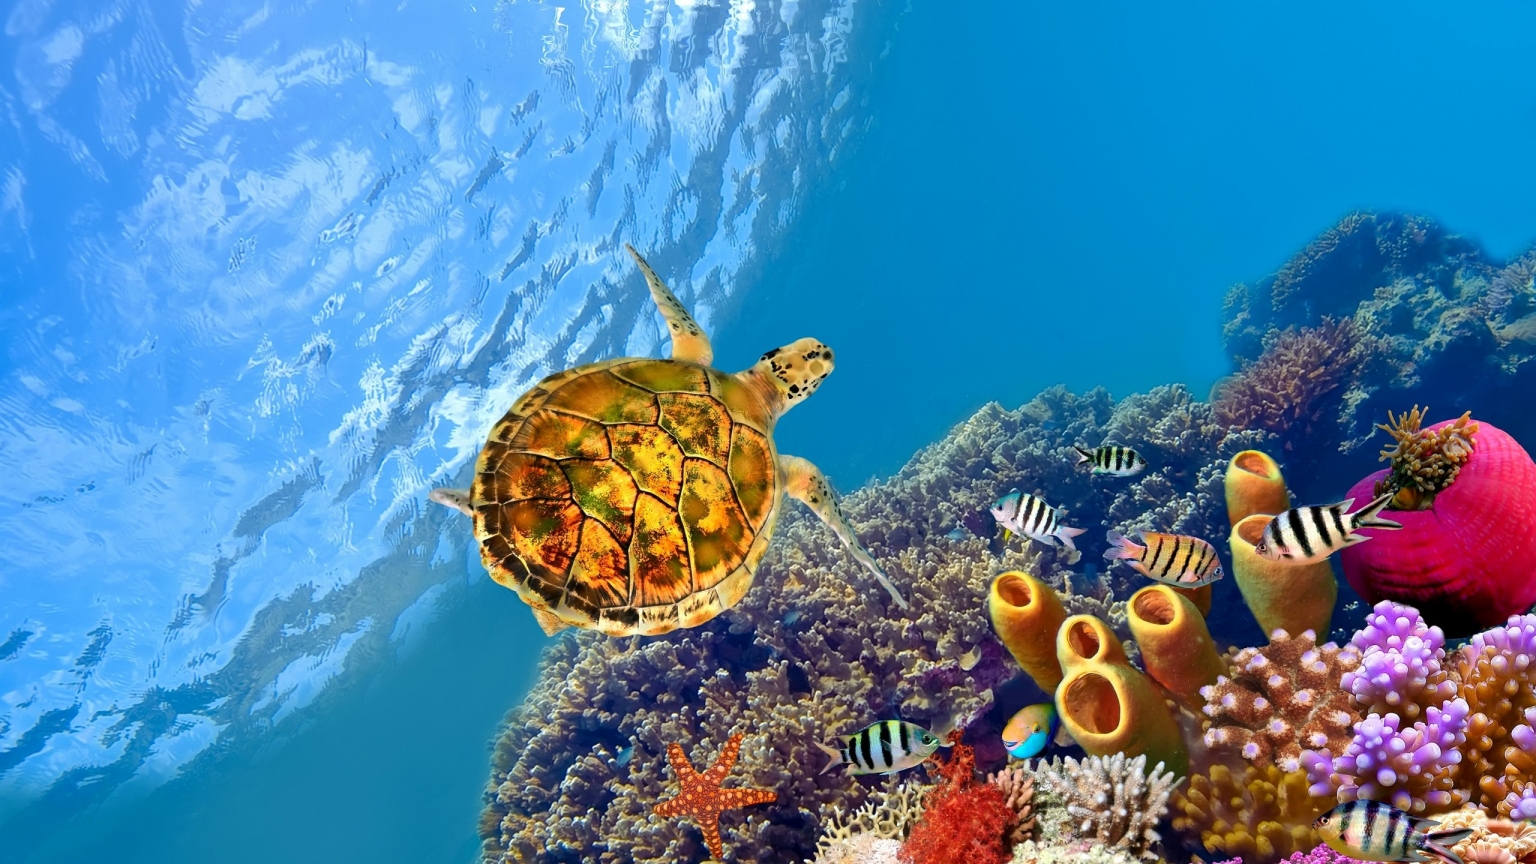 Turtle Underwater for 1536 x 864 HDTV resolution